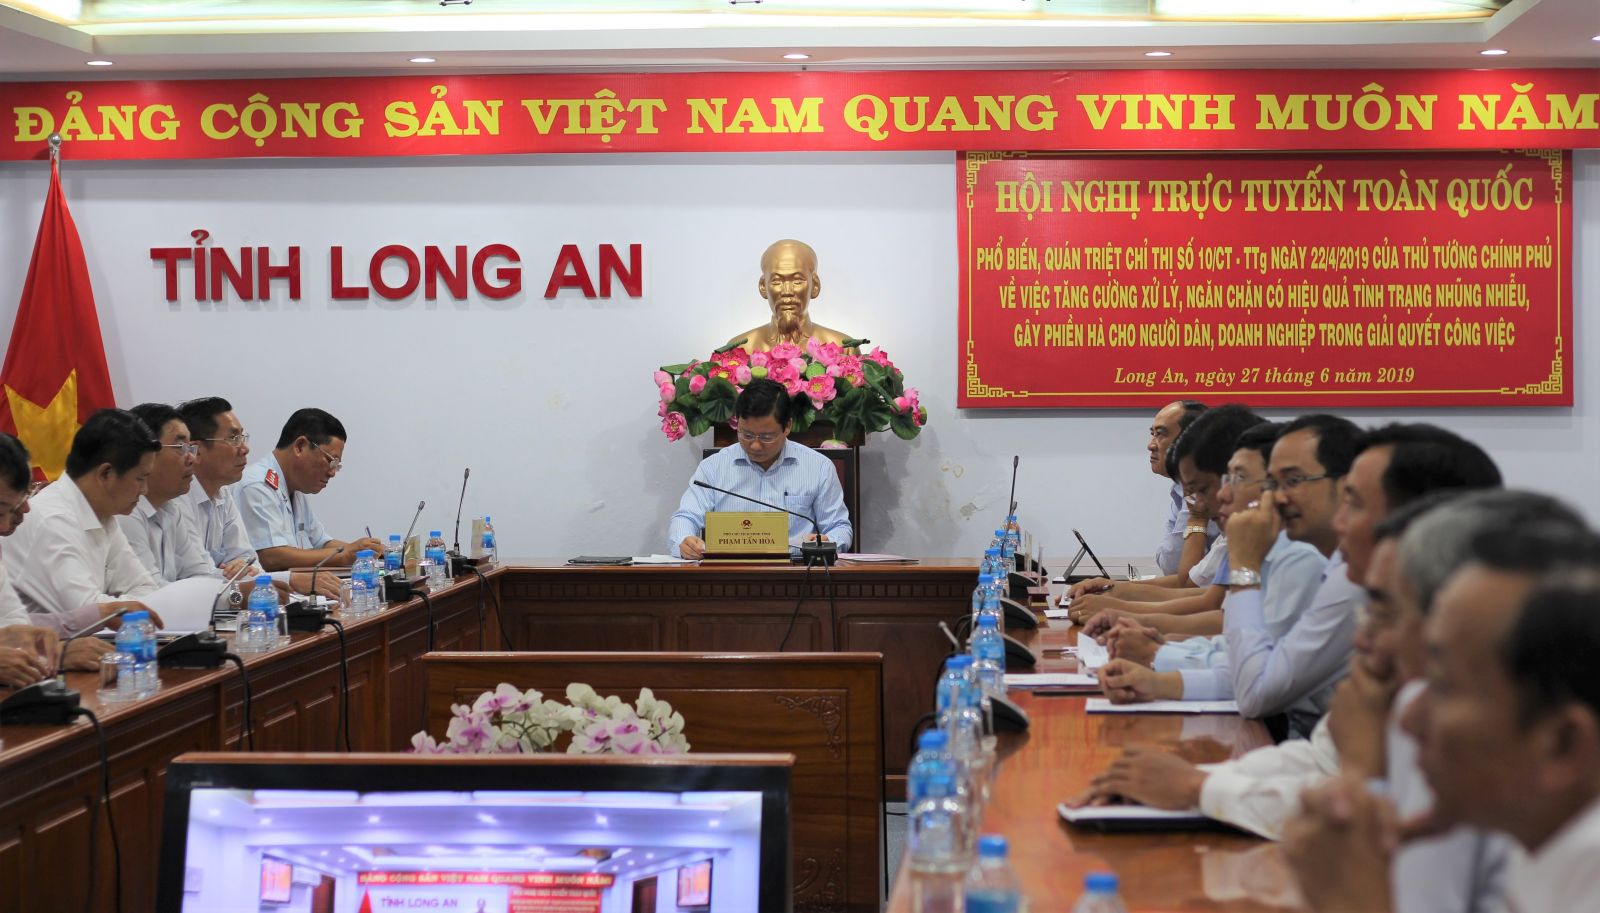 Phó Chủ tịch UBND tỉnh – Phạm Tấn Hòa chủ trì tại điểm cầu Long An.